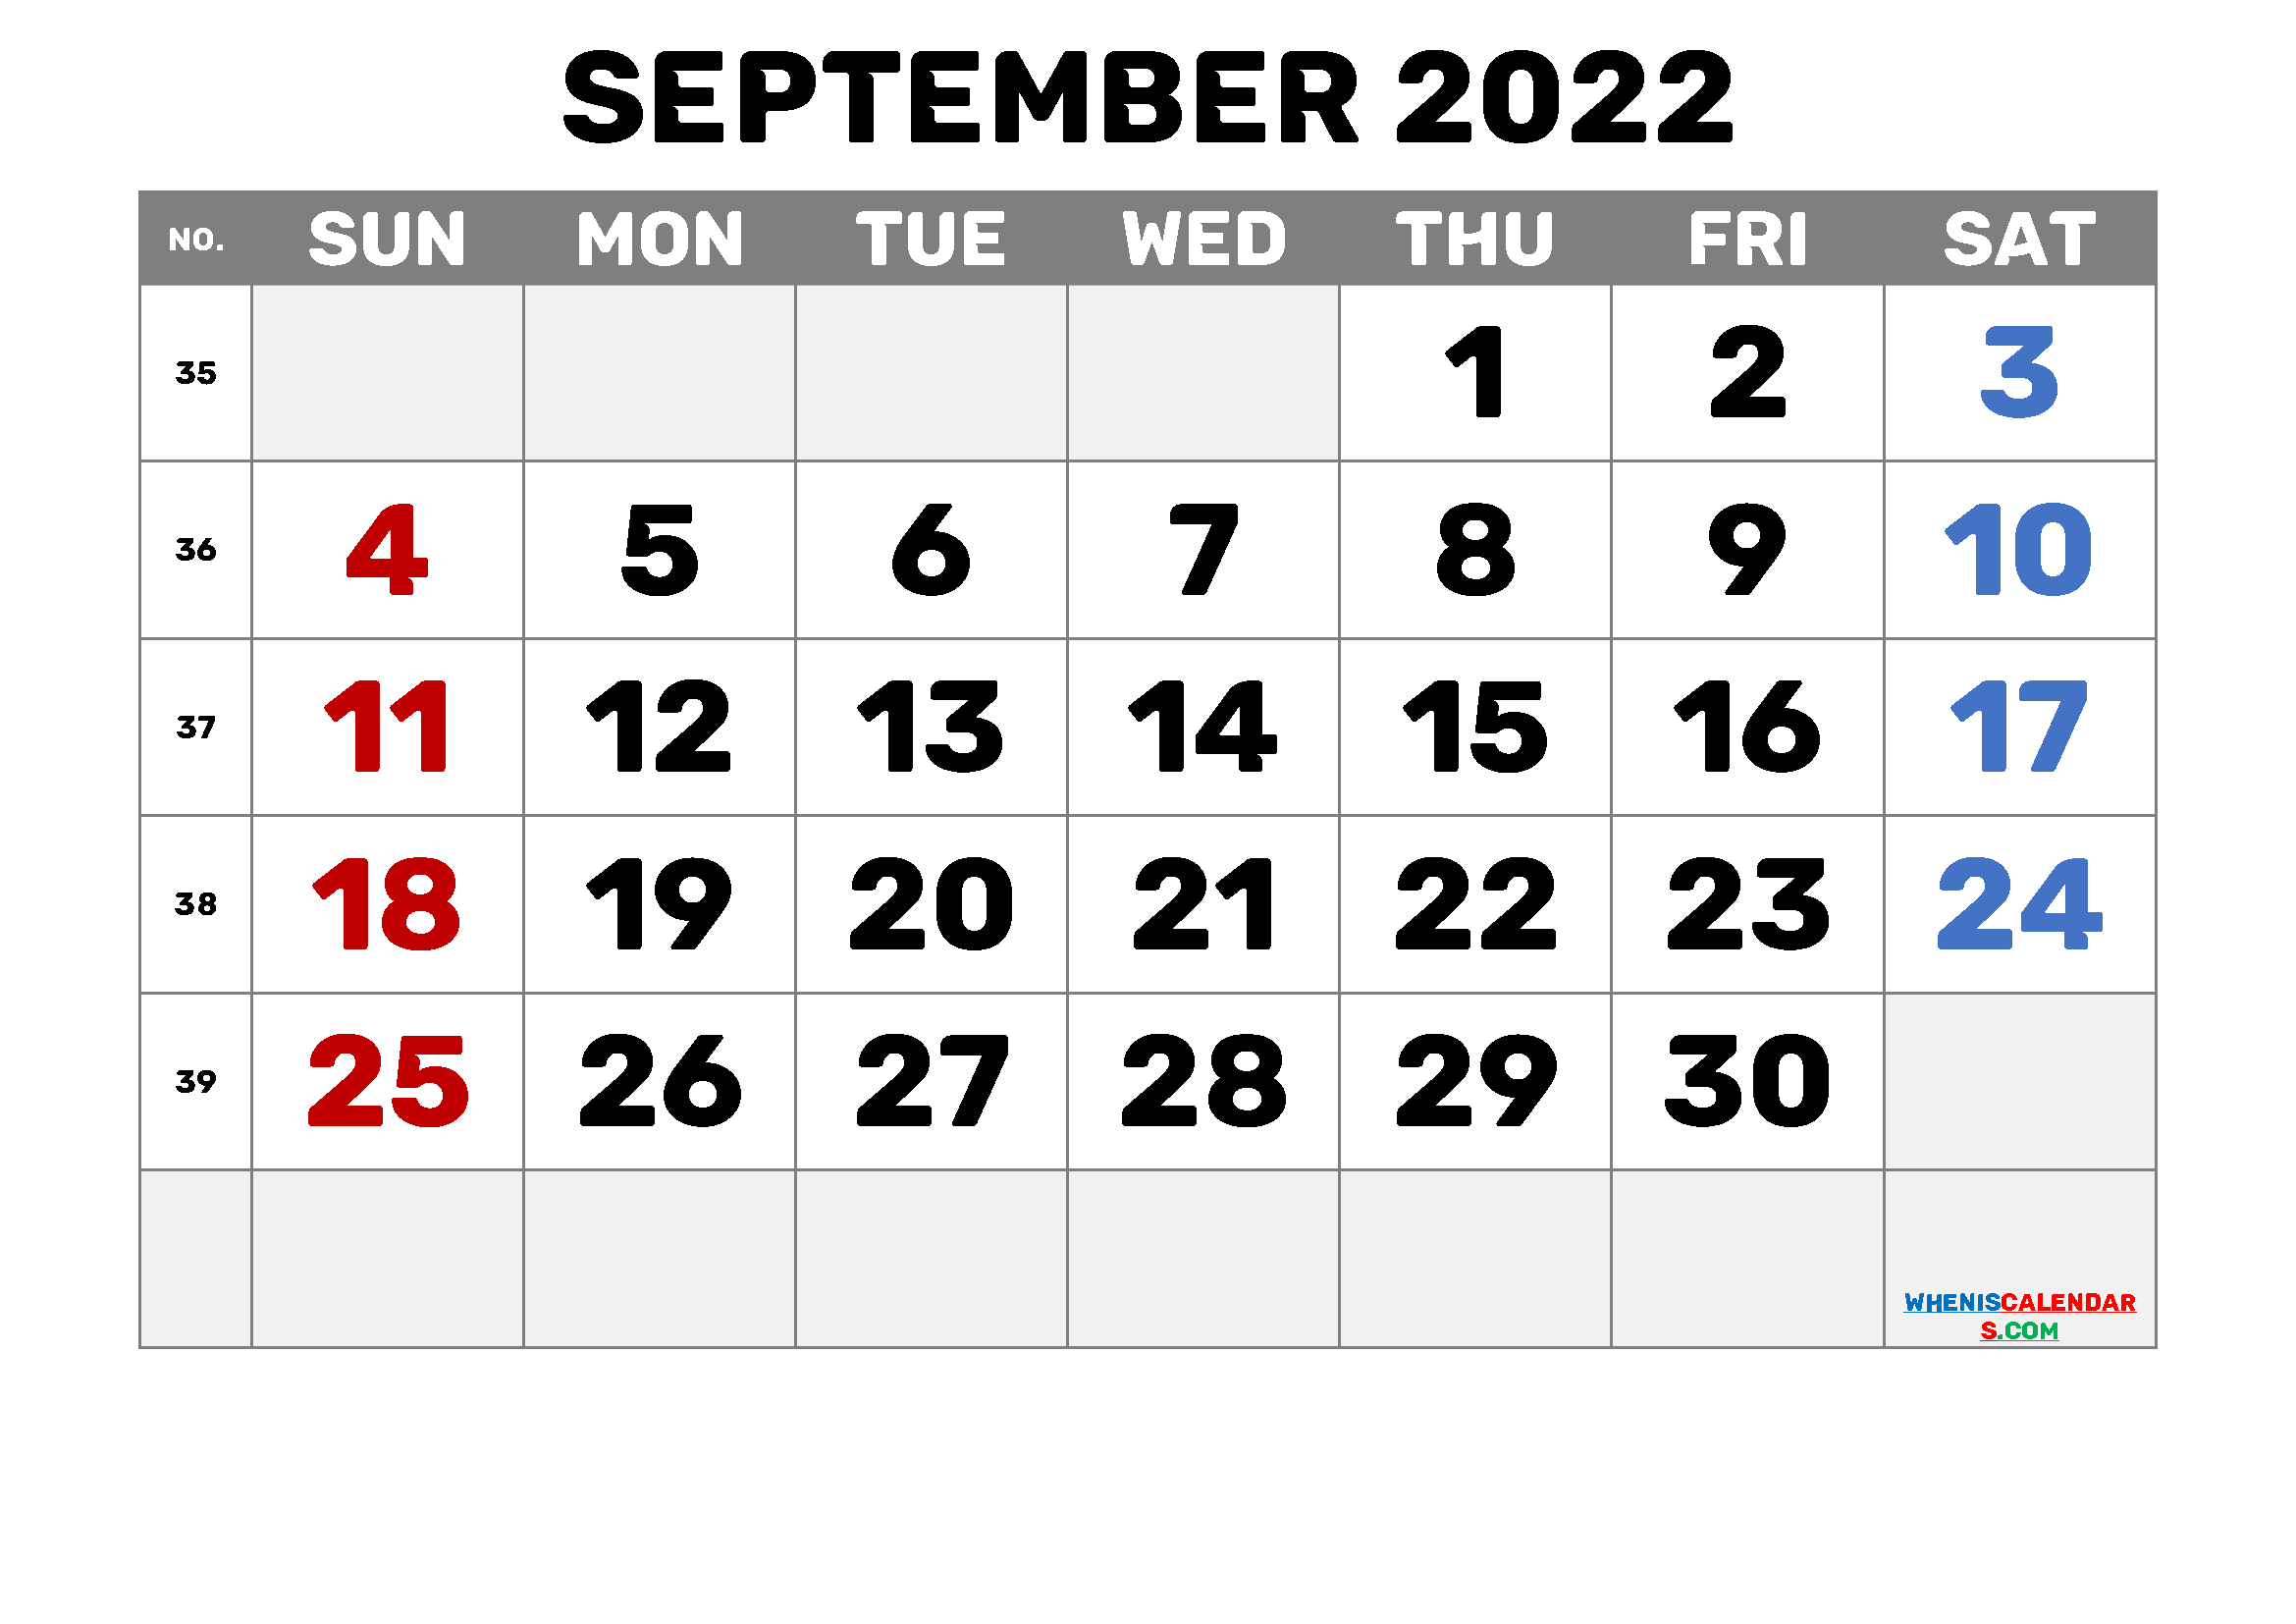 starfall calendar september 2022